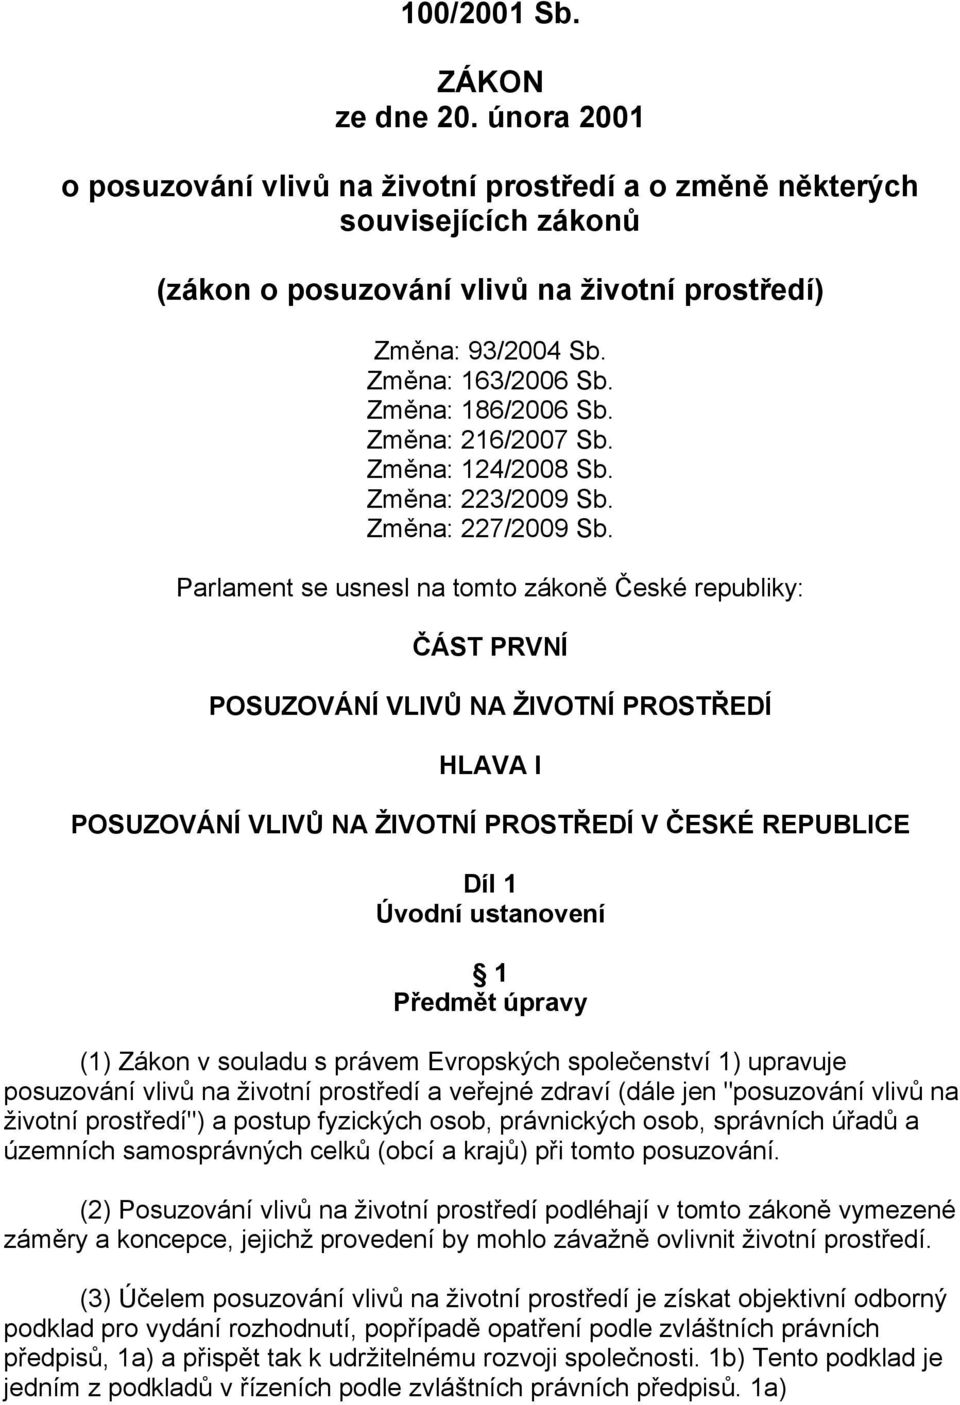 Parlament se usnesl na tomto zákoně České republiky: ČÁST PRVNÍ POSUZOVÁNÍ VLIVŮ NA ŽIVOTNÍ PROSTŘEDÍ HLAVA I POSUZOVÁNÍ VLIVŮ NA ŽIVOTNÍ PROSTŘEDÍ V ČESKÉ REPUBLICE Díl 1 Úvodní ustanovení 1 Předmět